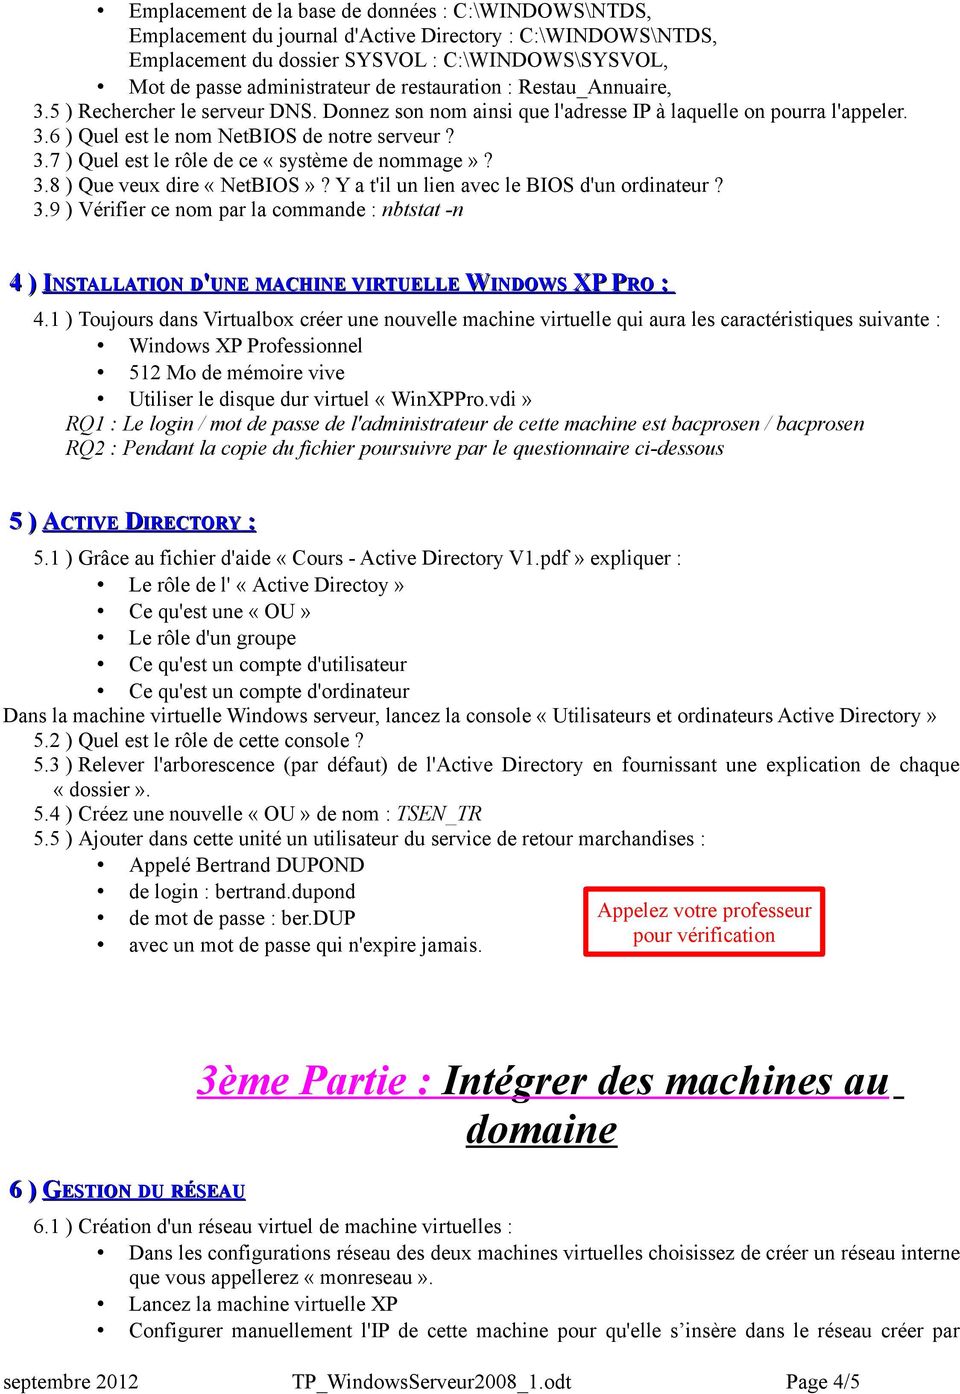 3.8 ) Que veux dire «NetBIOS»? Y a t'il un lien avec le BIOS d'un ordinateur? 3.9 ) Vérifier ce nom par la commande nbtstat -n 4 ) INSTALLATION D'UNE MACHINE VIRTUELLE WINDOWS XP P XP PRO 4.